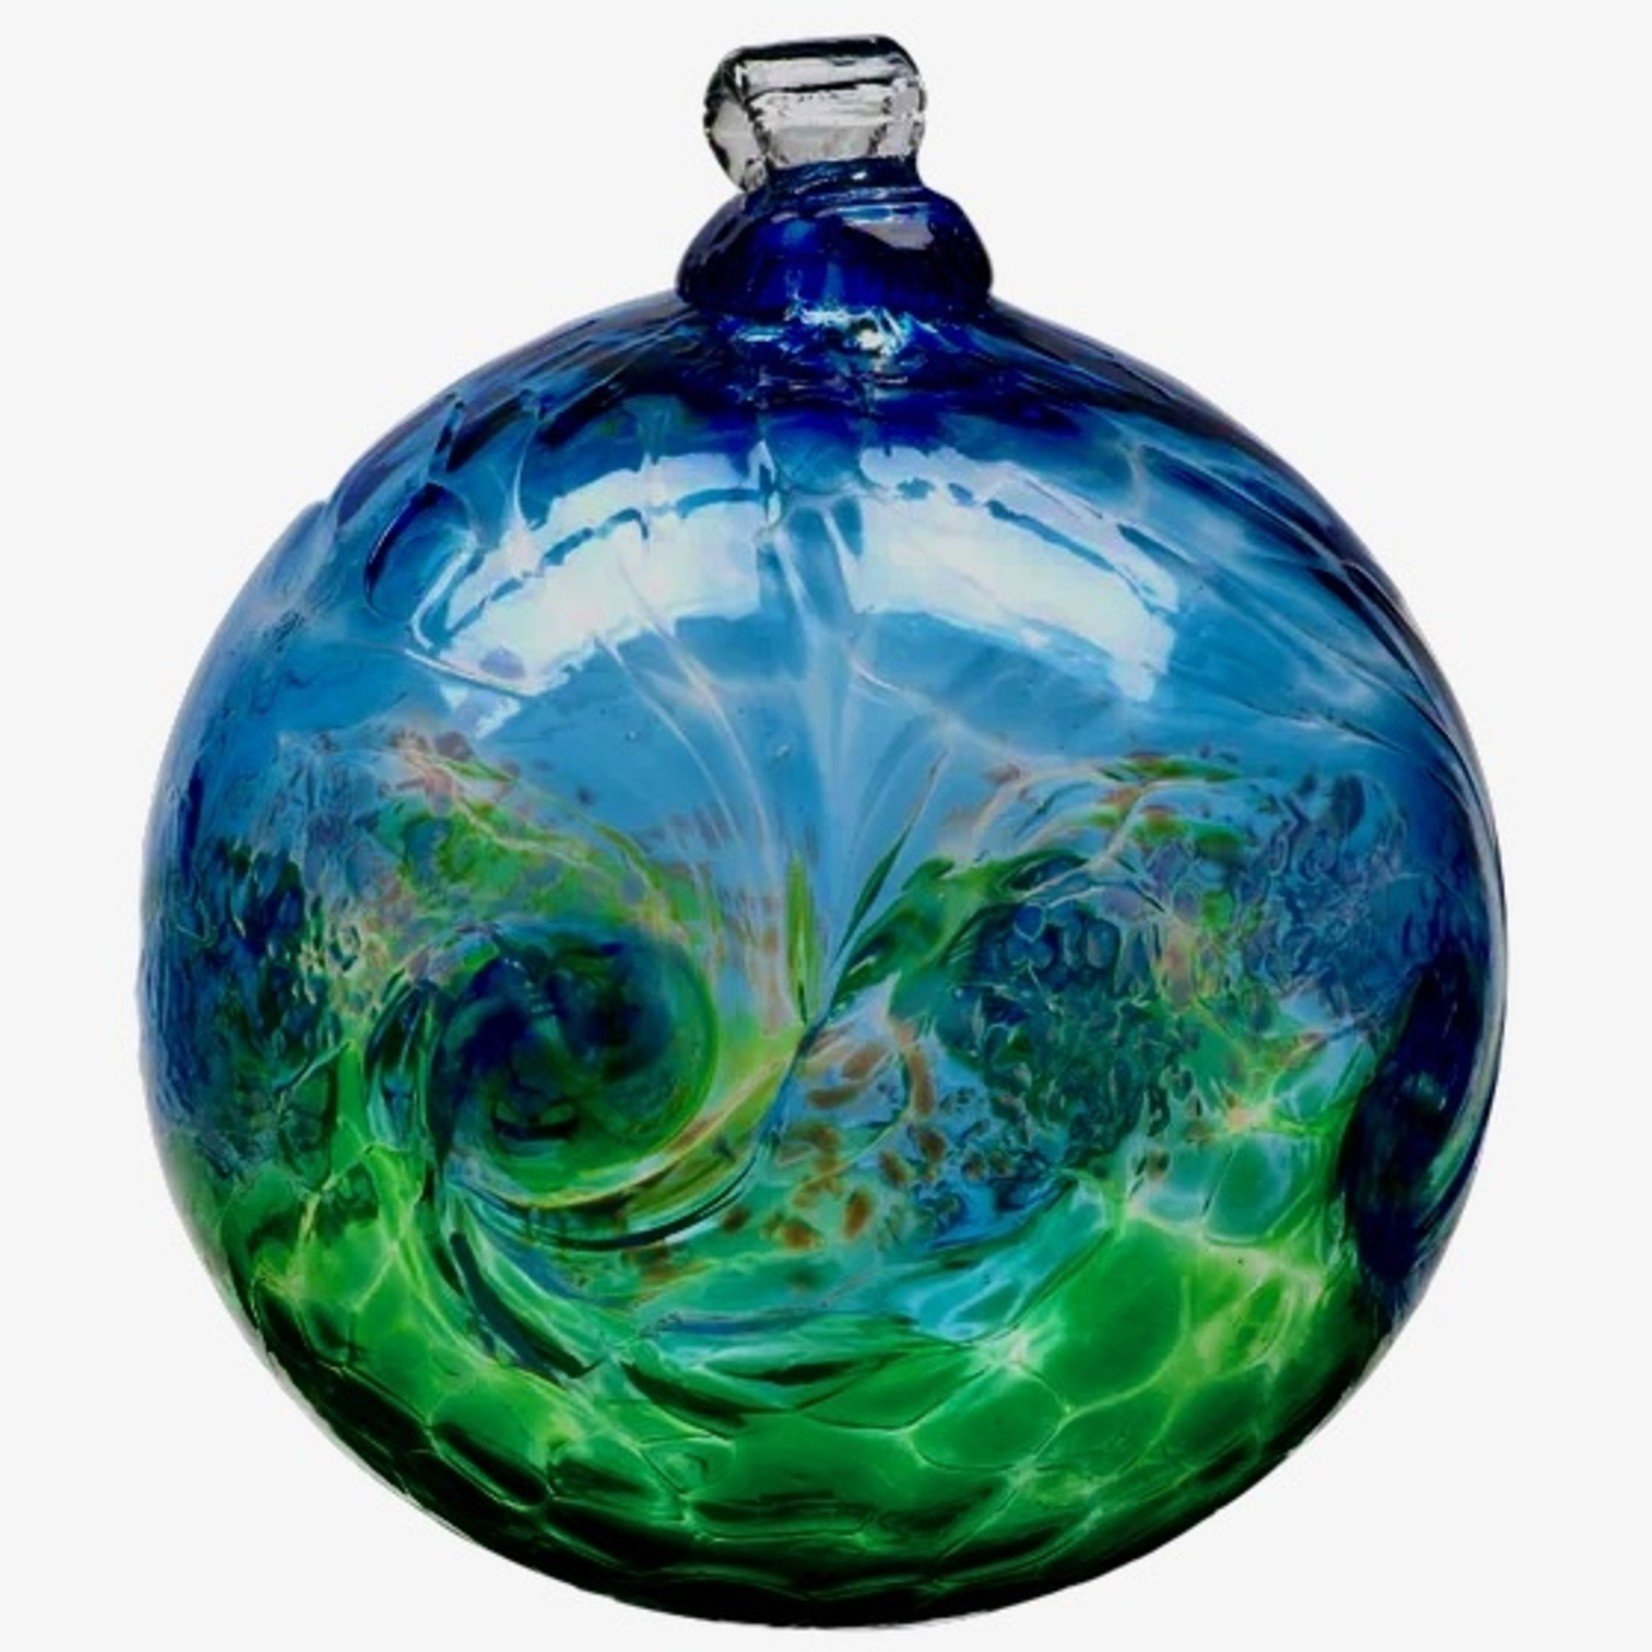 Kitras Art Glass VANGLOW Ball, 3", Blue/Green, KITRAS